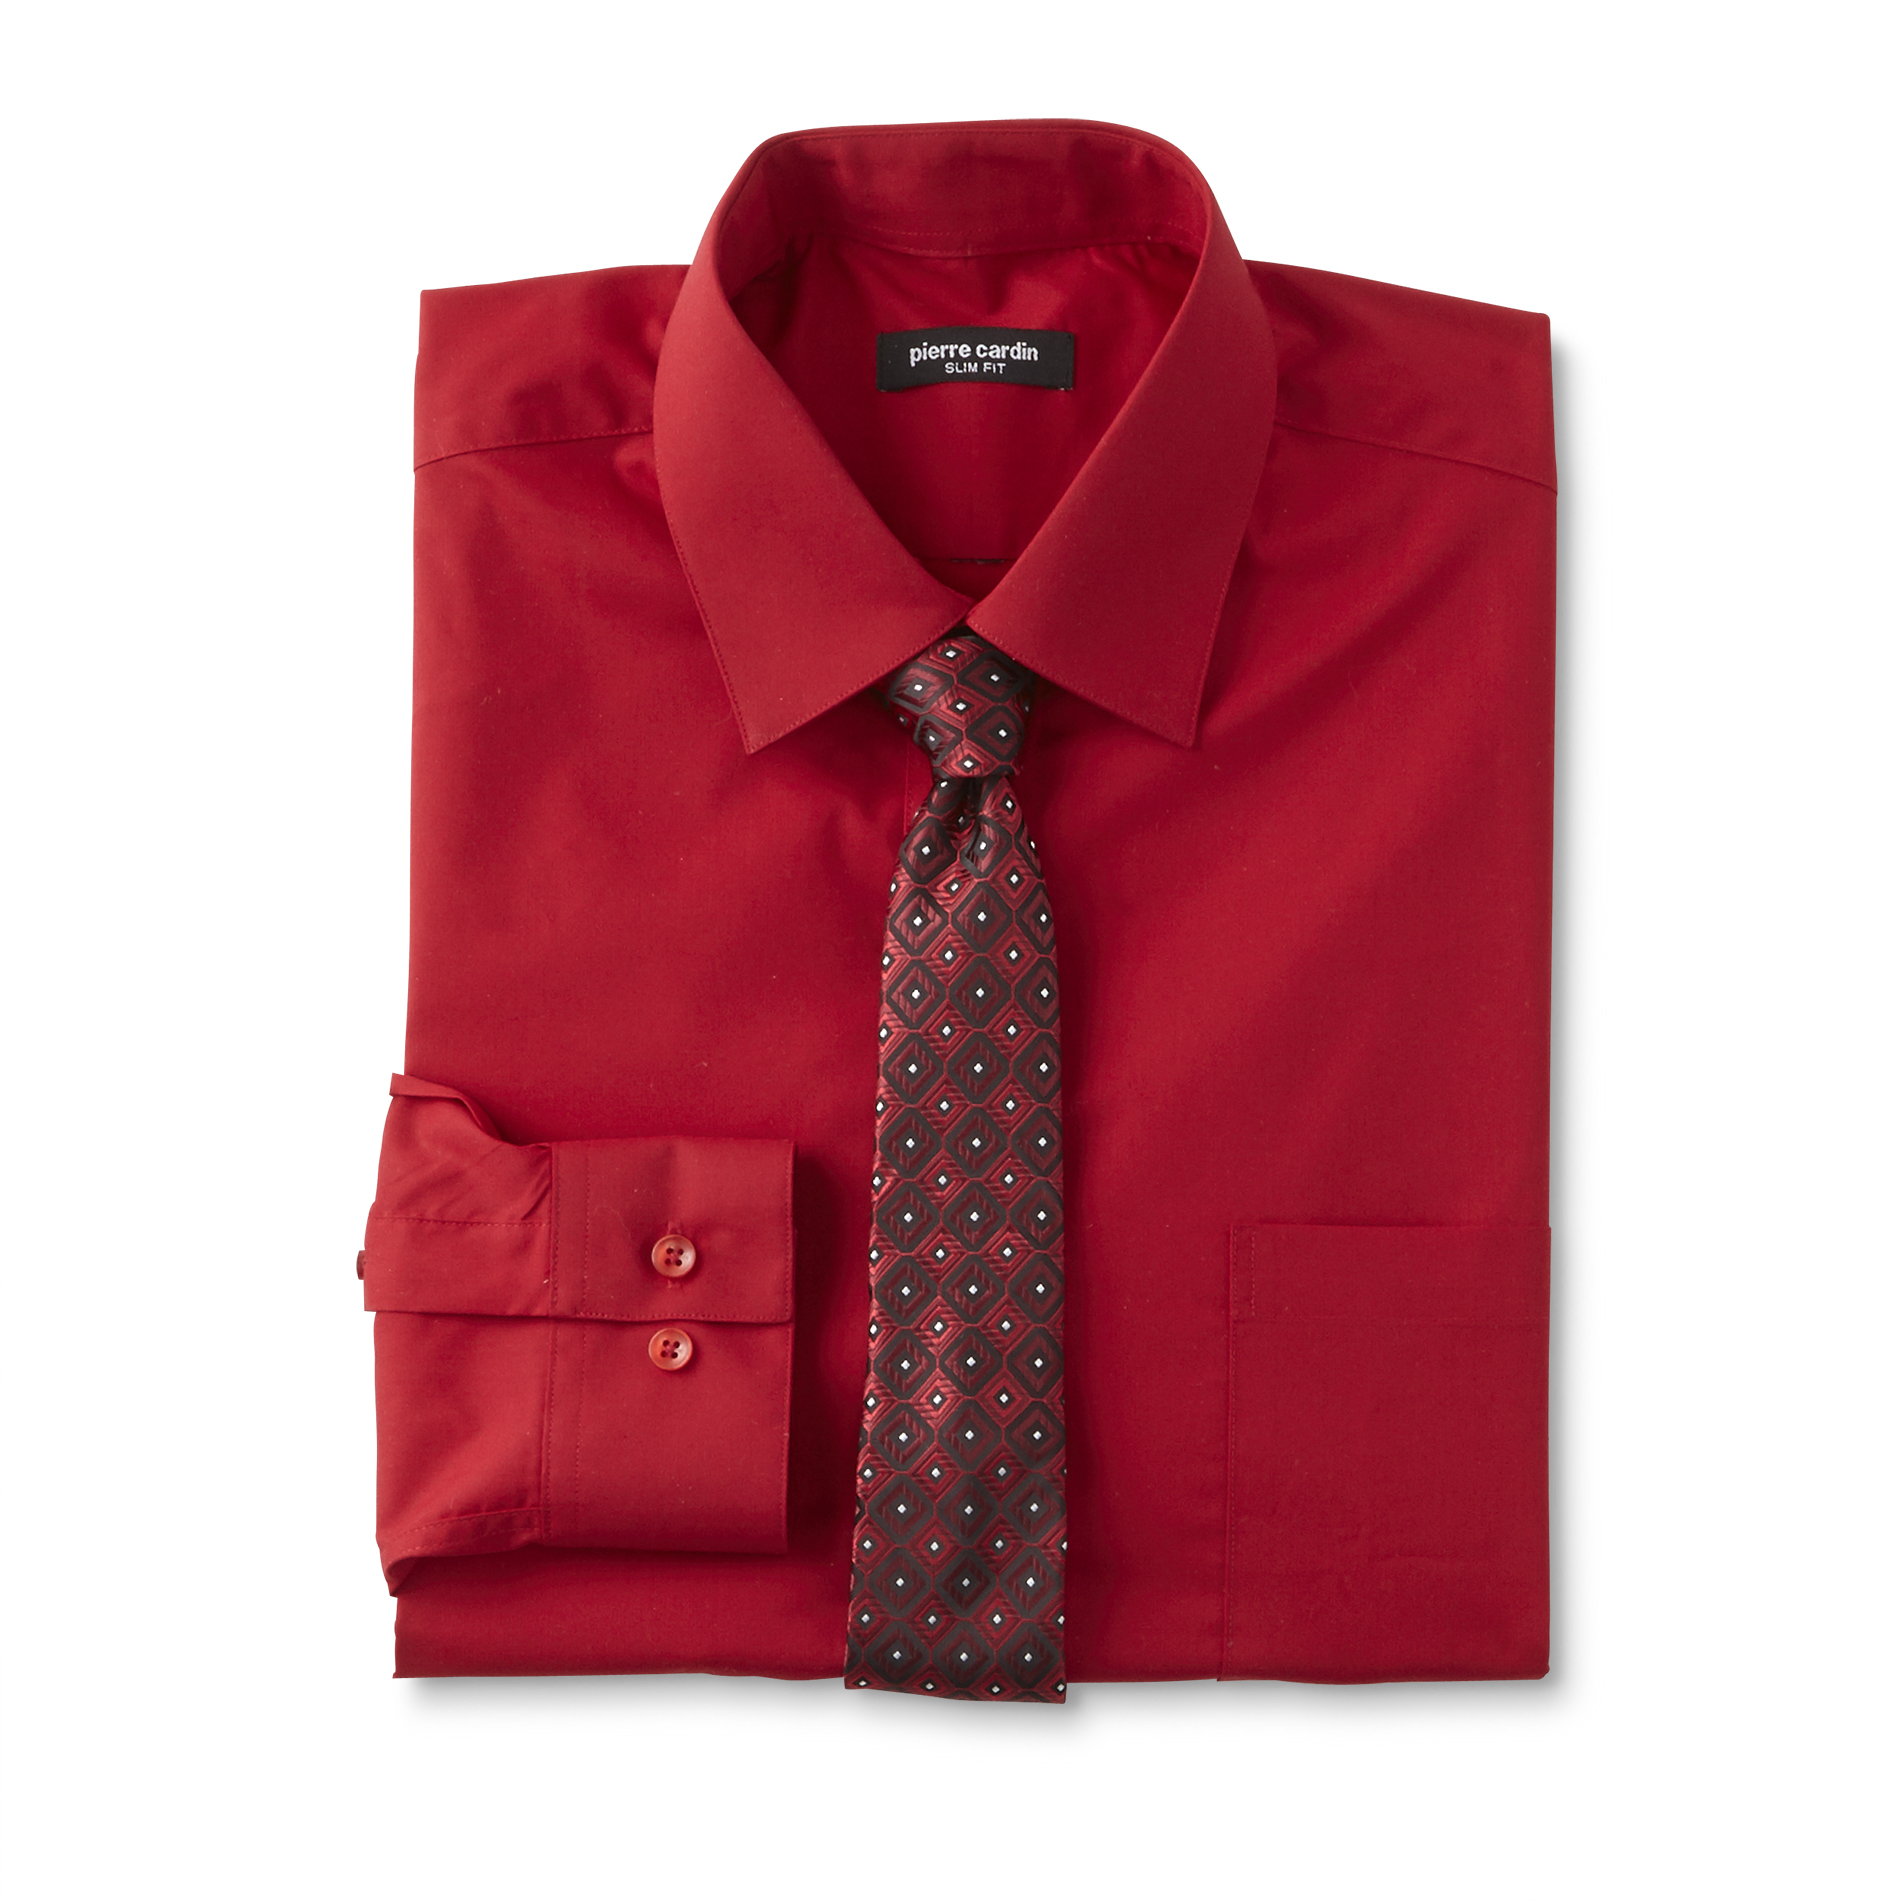 Pierre Cardin Men's Dress Shirt & Necktie - Geometric